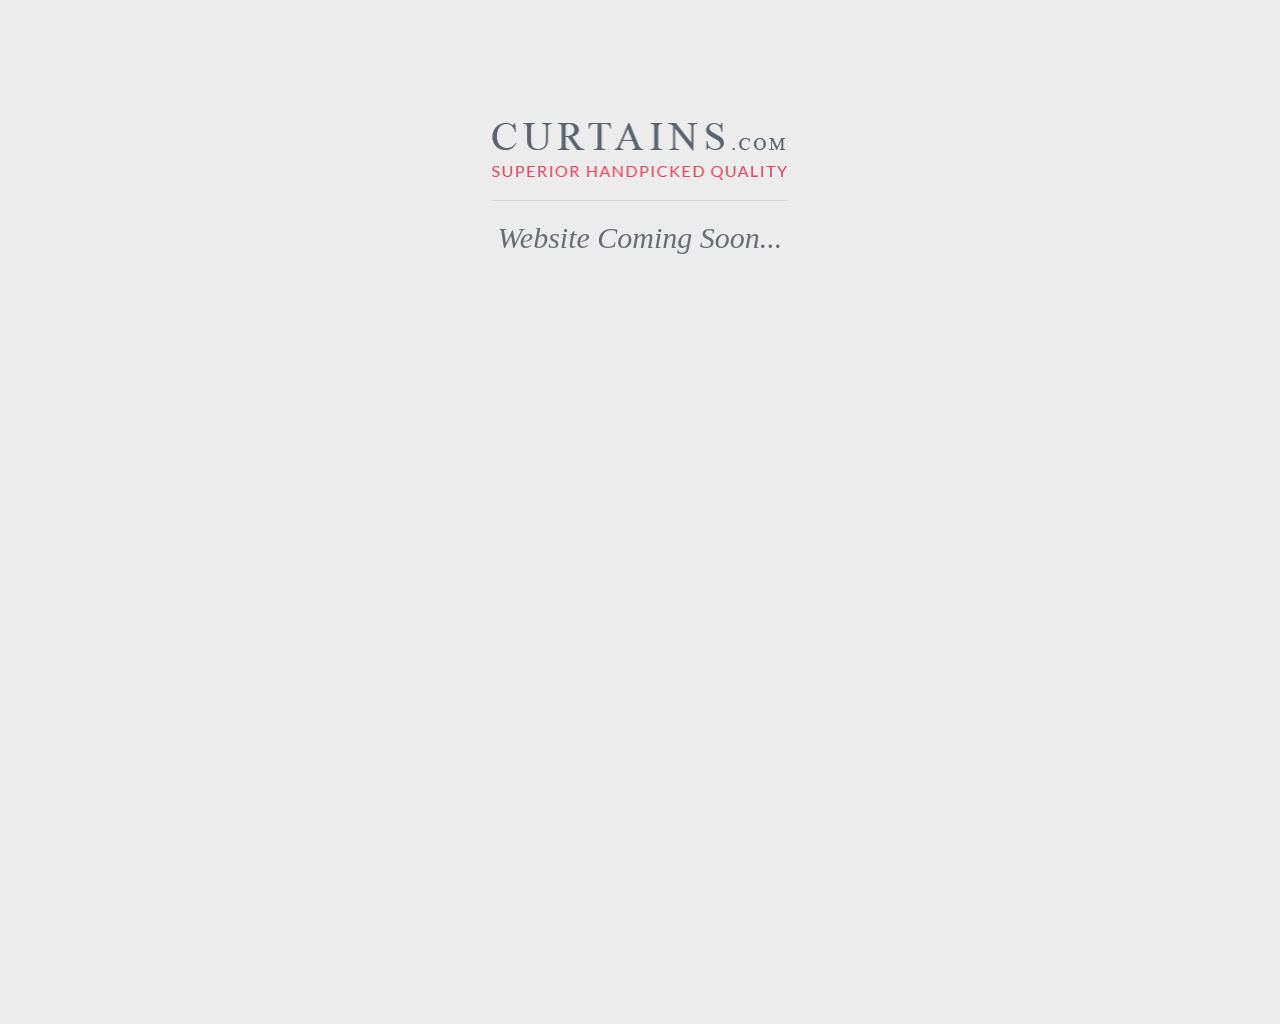 curtains.com